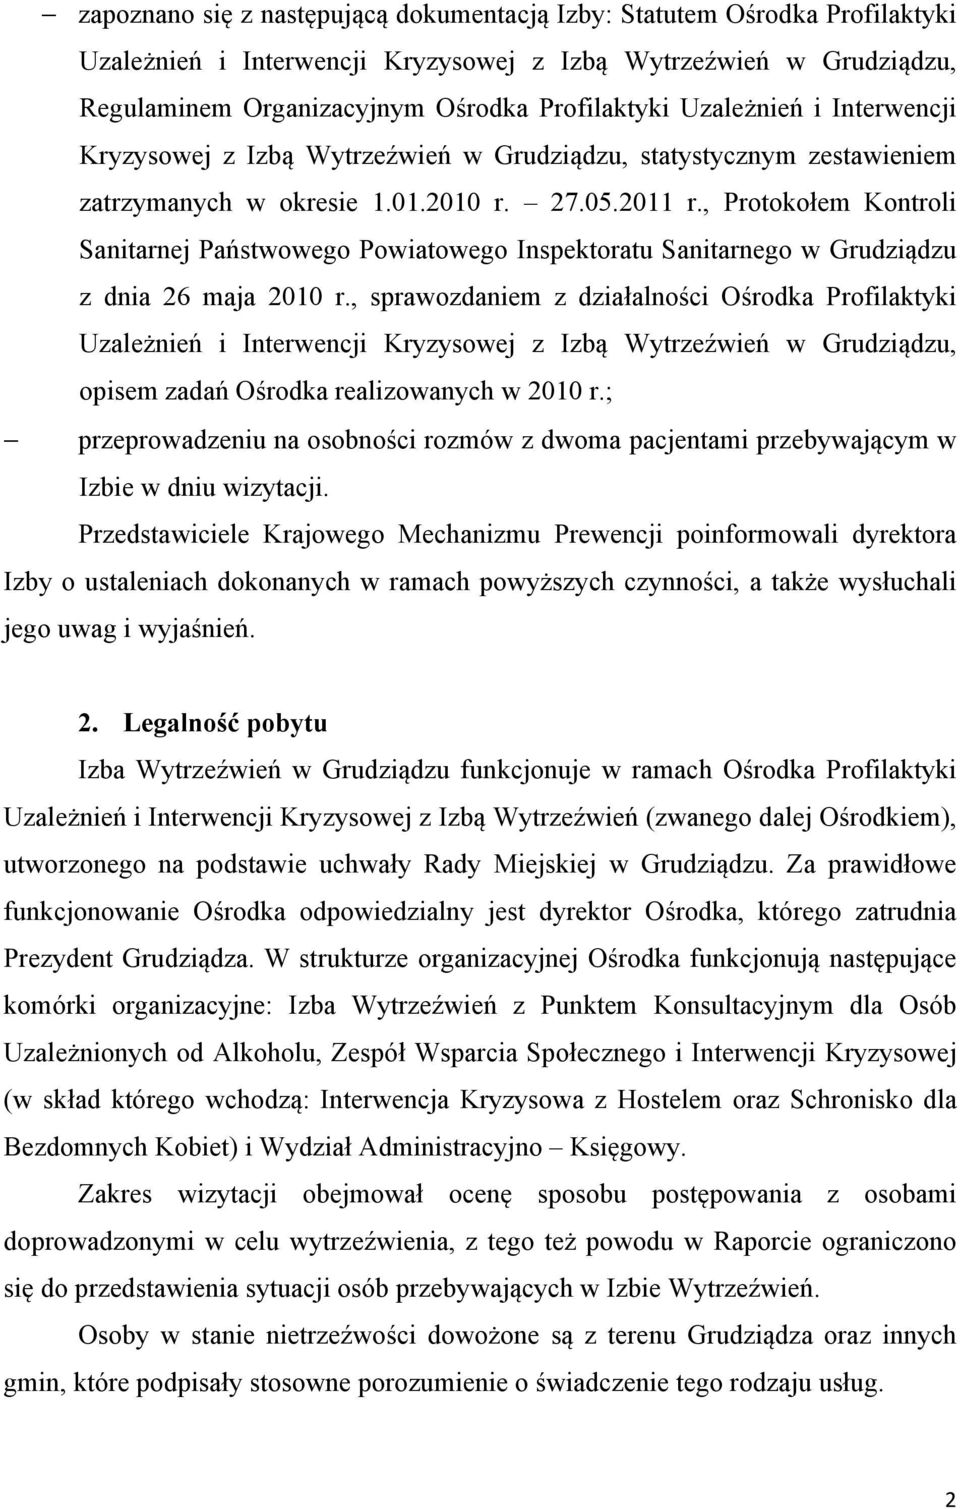 , Protokołem Kontroli Sanitarnej Państwowego Powiatowego Inspektoratu Sanitarnego w Grudziądzu z dnia 26 maja 2010 r.